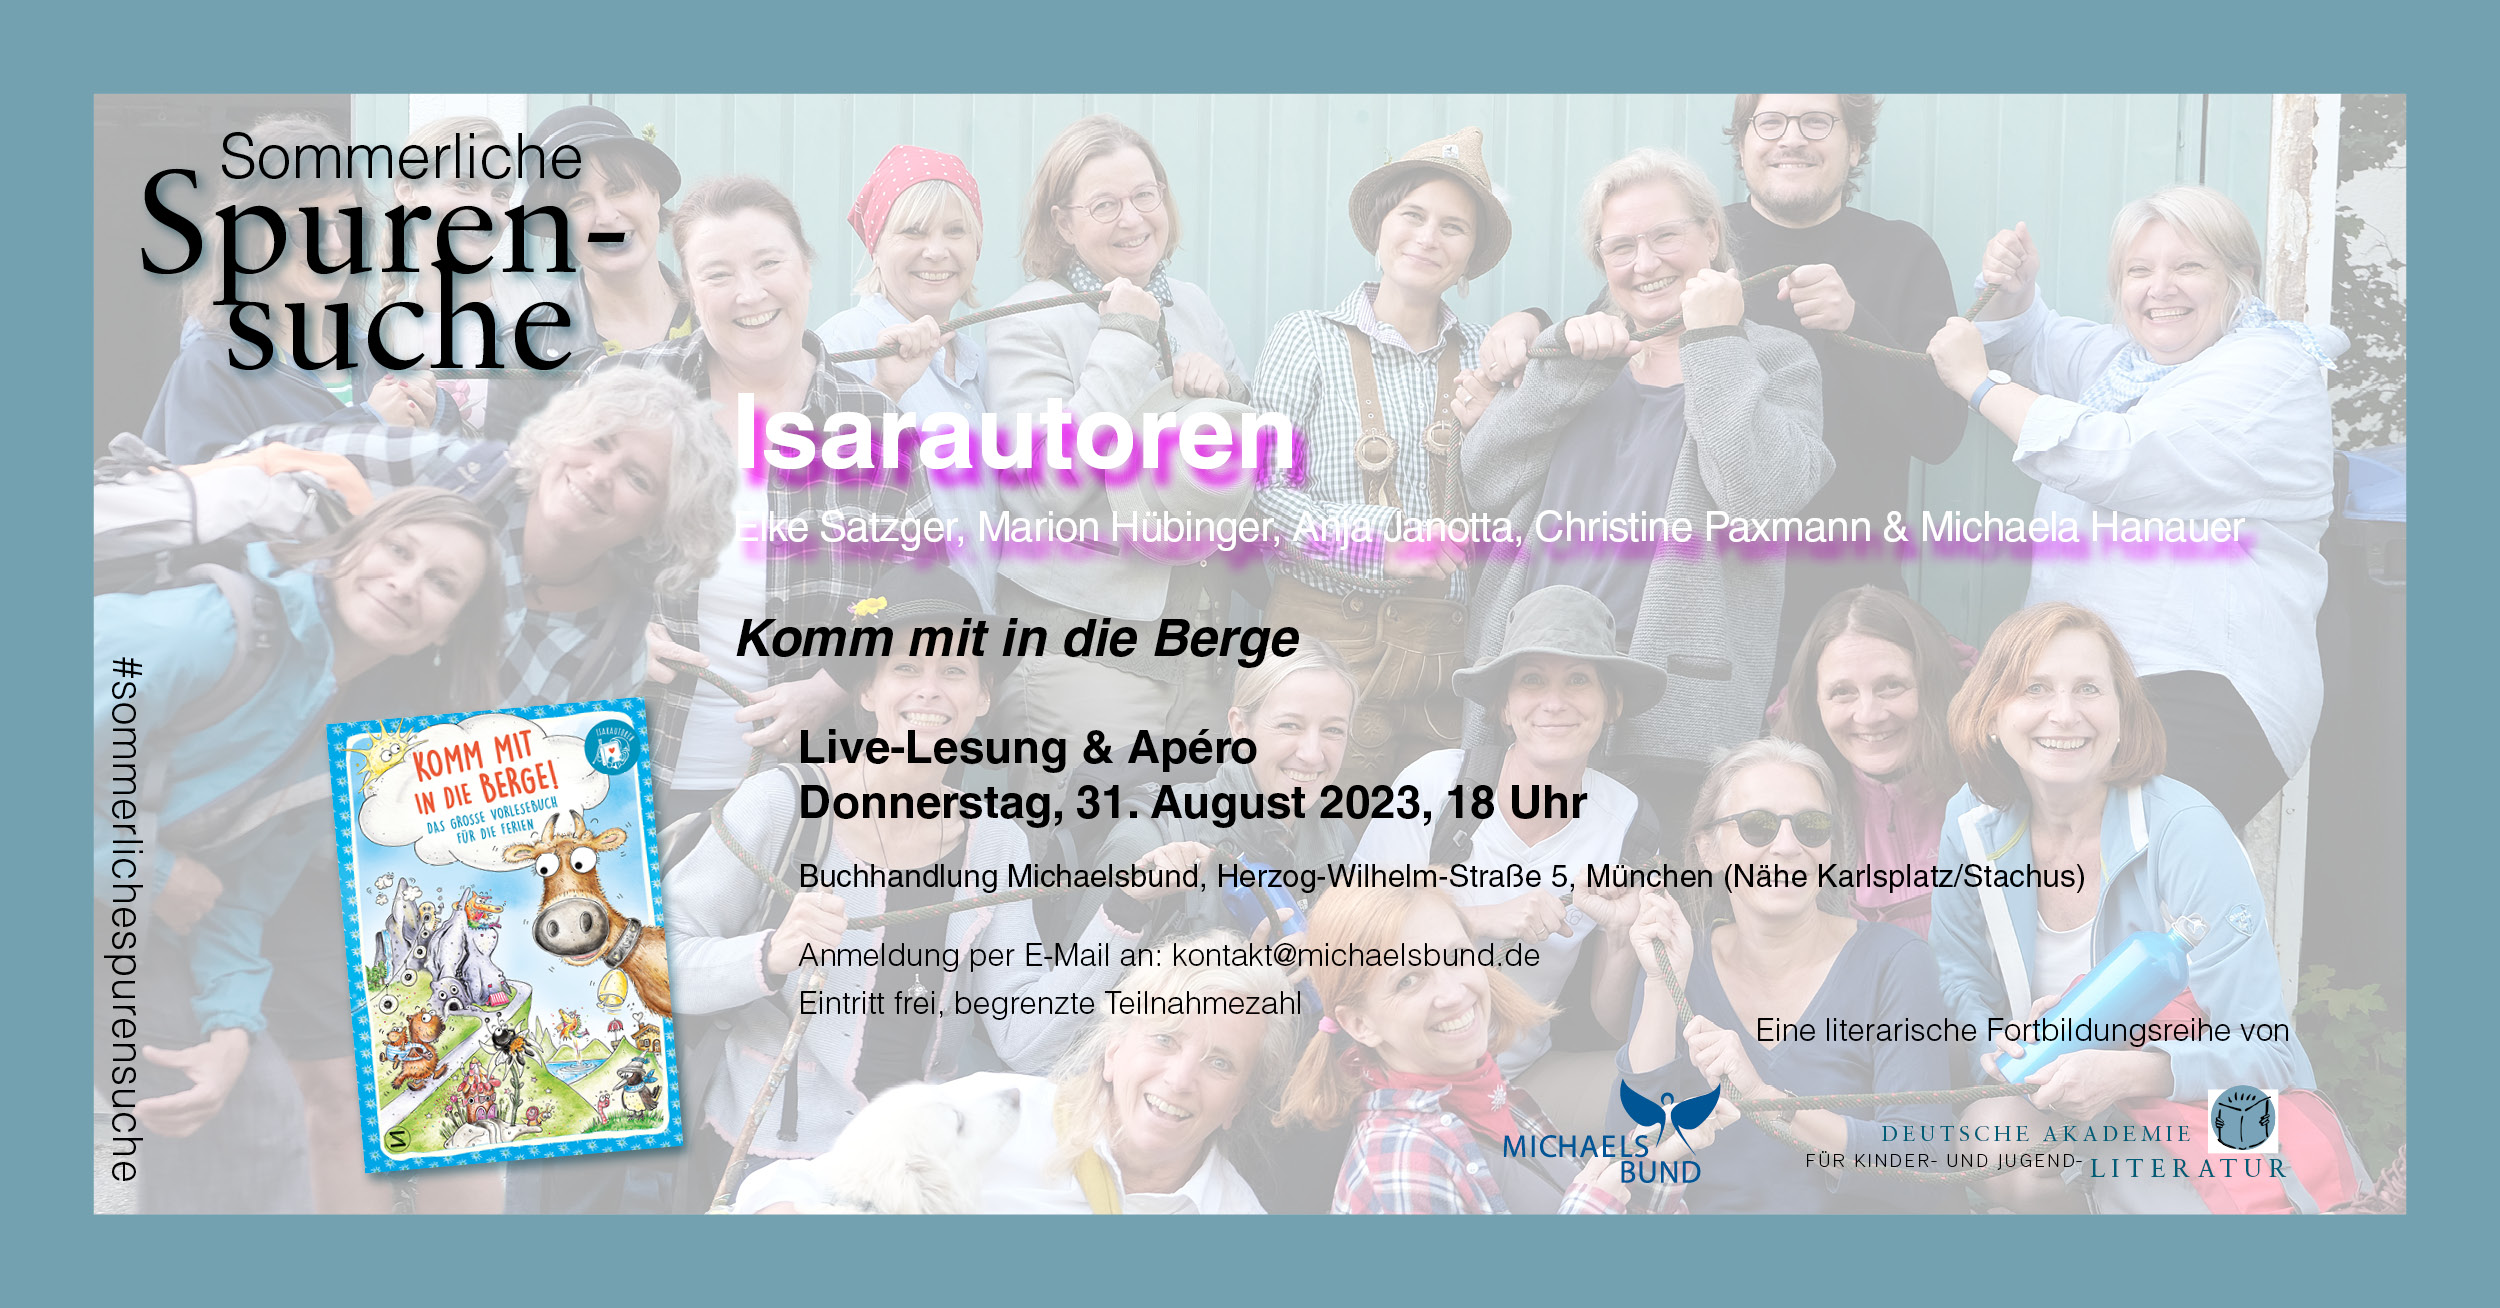 Sommerliche Spurensuche: "Komm mit in die Berge" | Live-Lesung & Apéro mit den Isarautoren (31.08.2023)